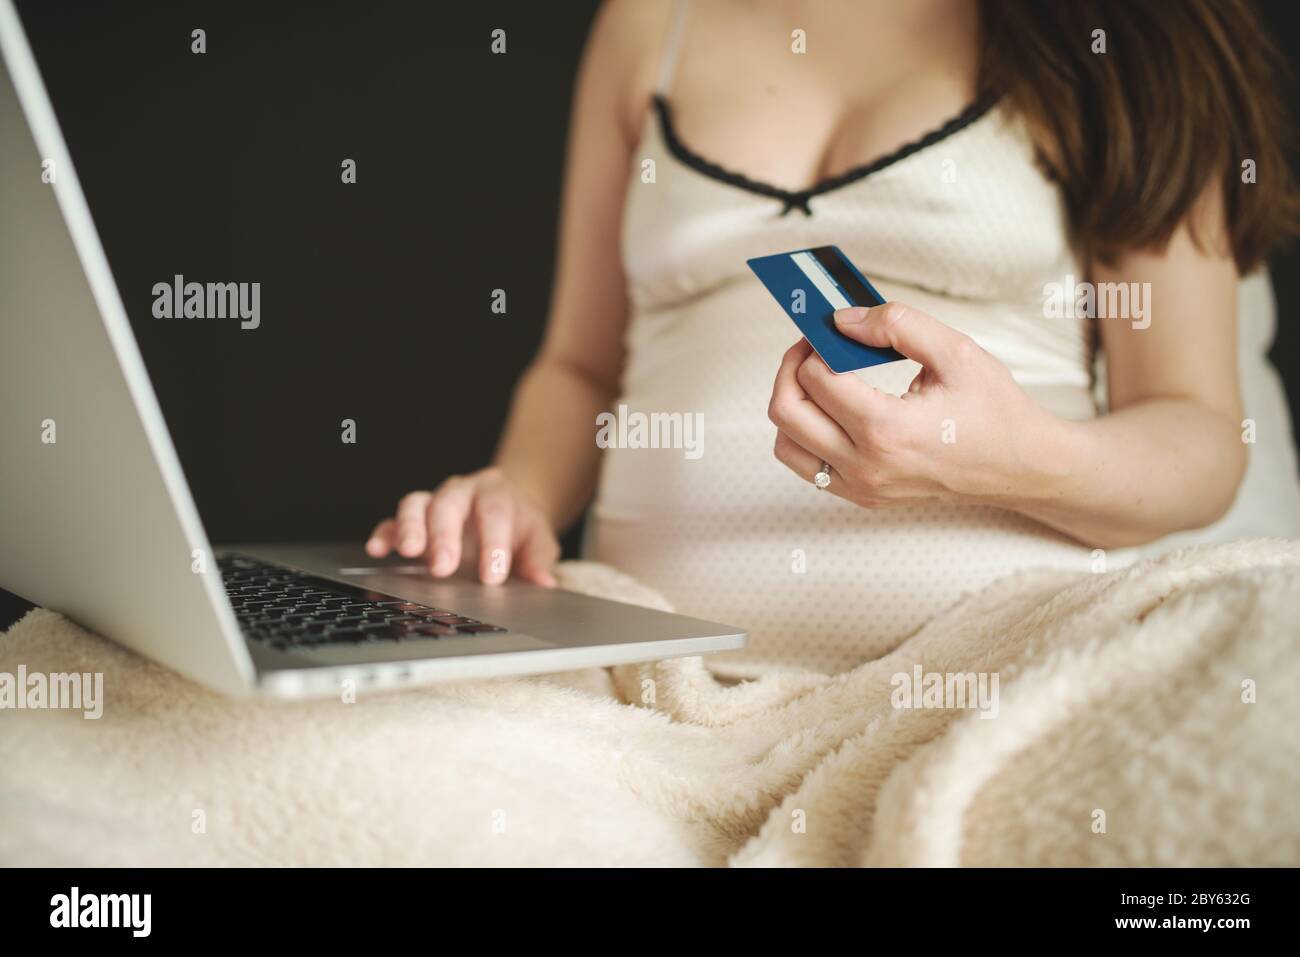 Une femme pensive magasiner en ligne avec une carte de crédit et un ordinateur portable, assis sur un canapé à la maison. Jeune femme enceinte surfer net, acheter des marchandises pour nouveau-né Banque D'Images